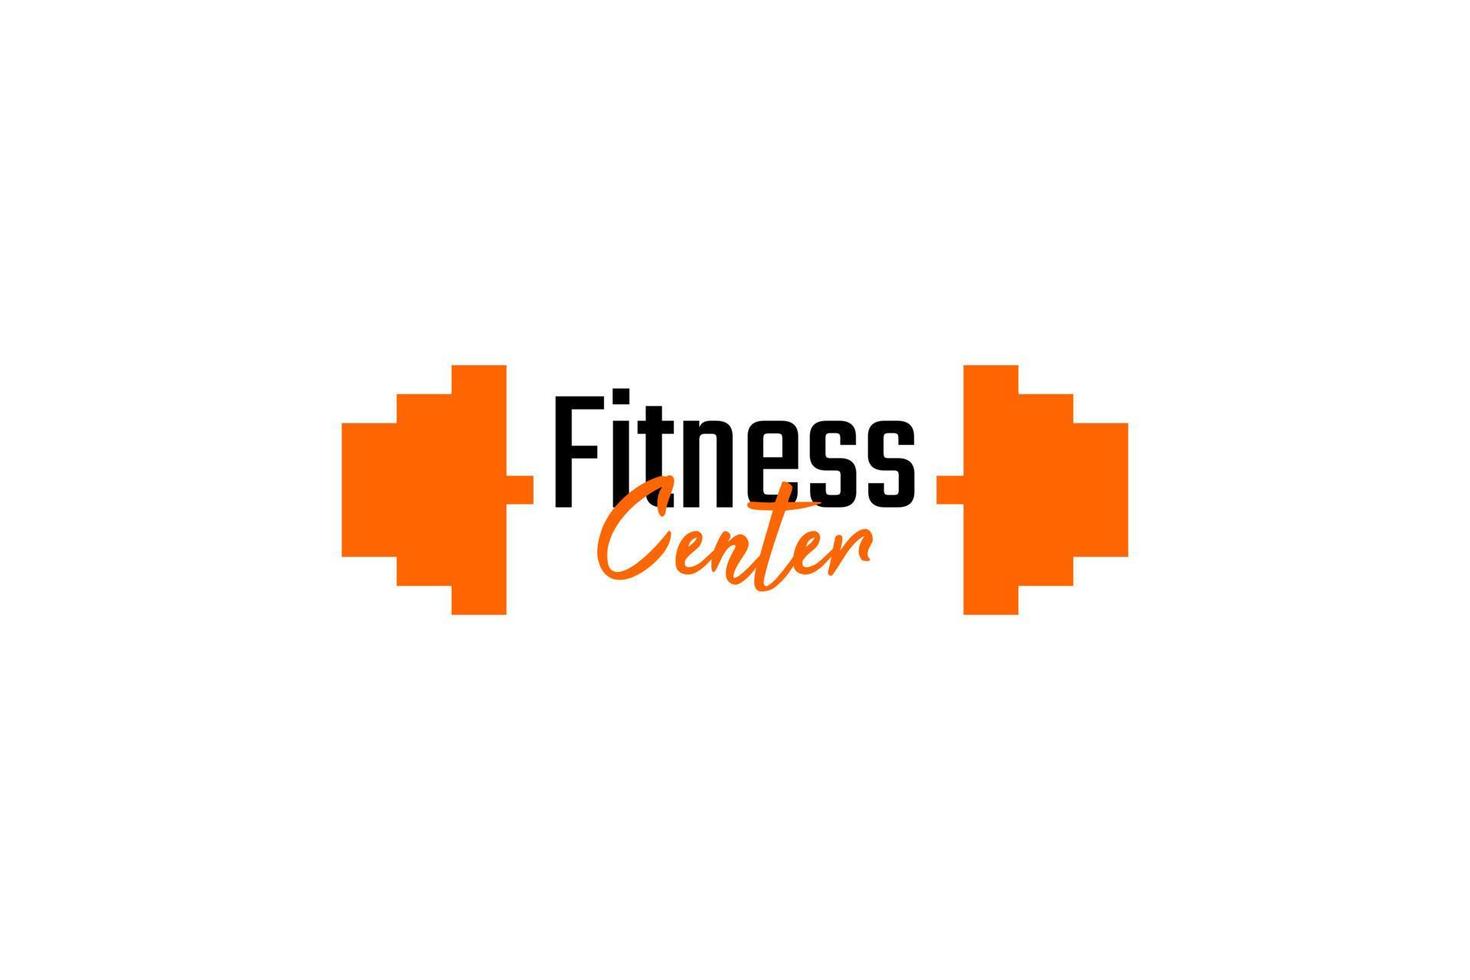 modelo de vetor de design de logotipo de centro de fitness e ginásio